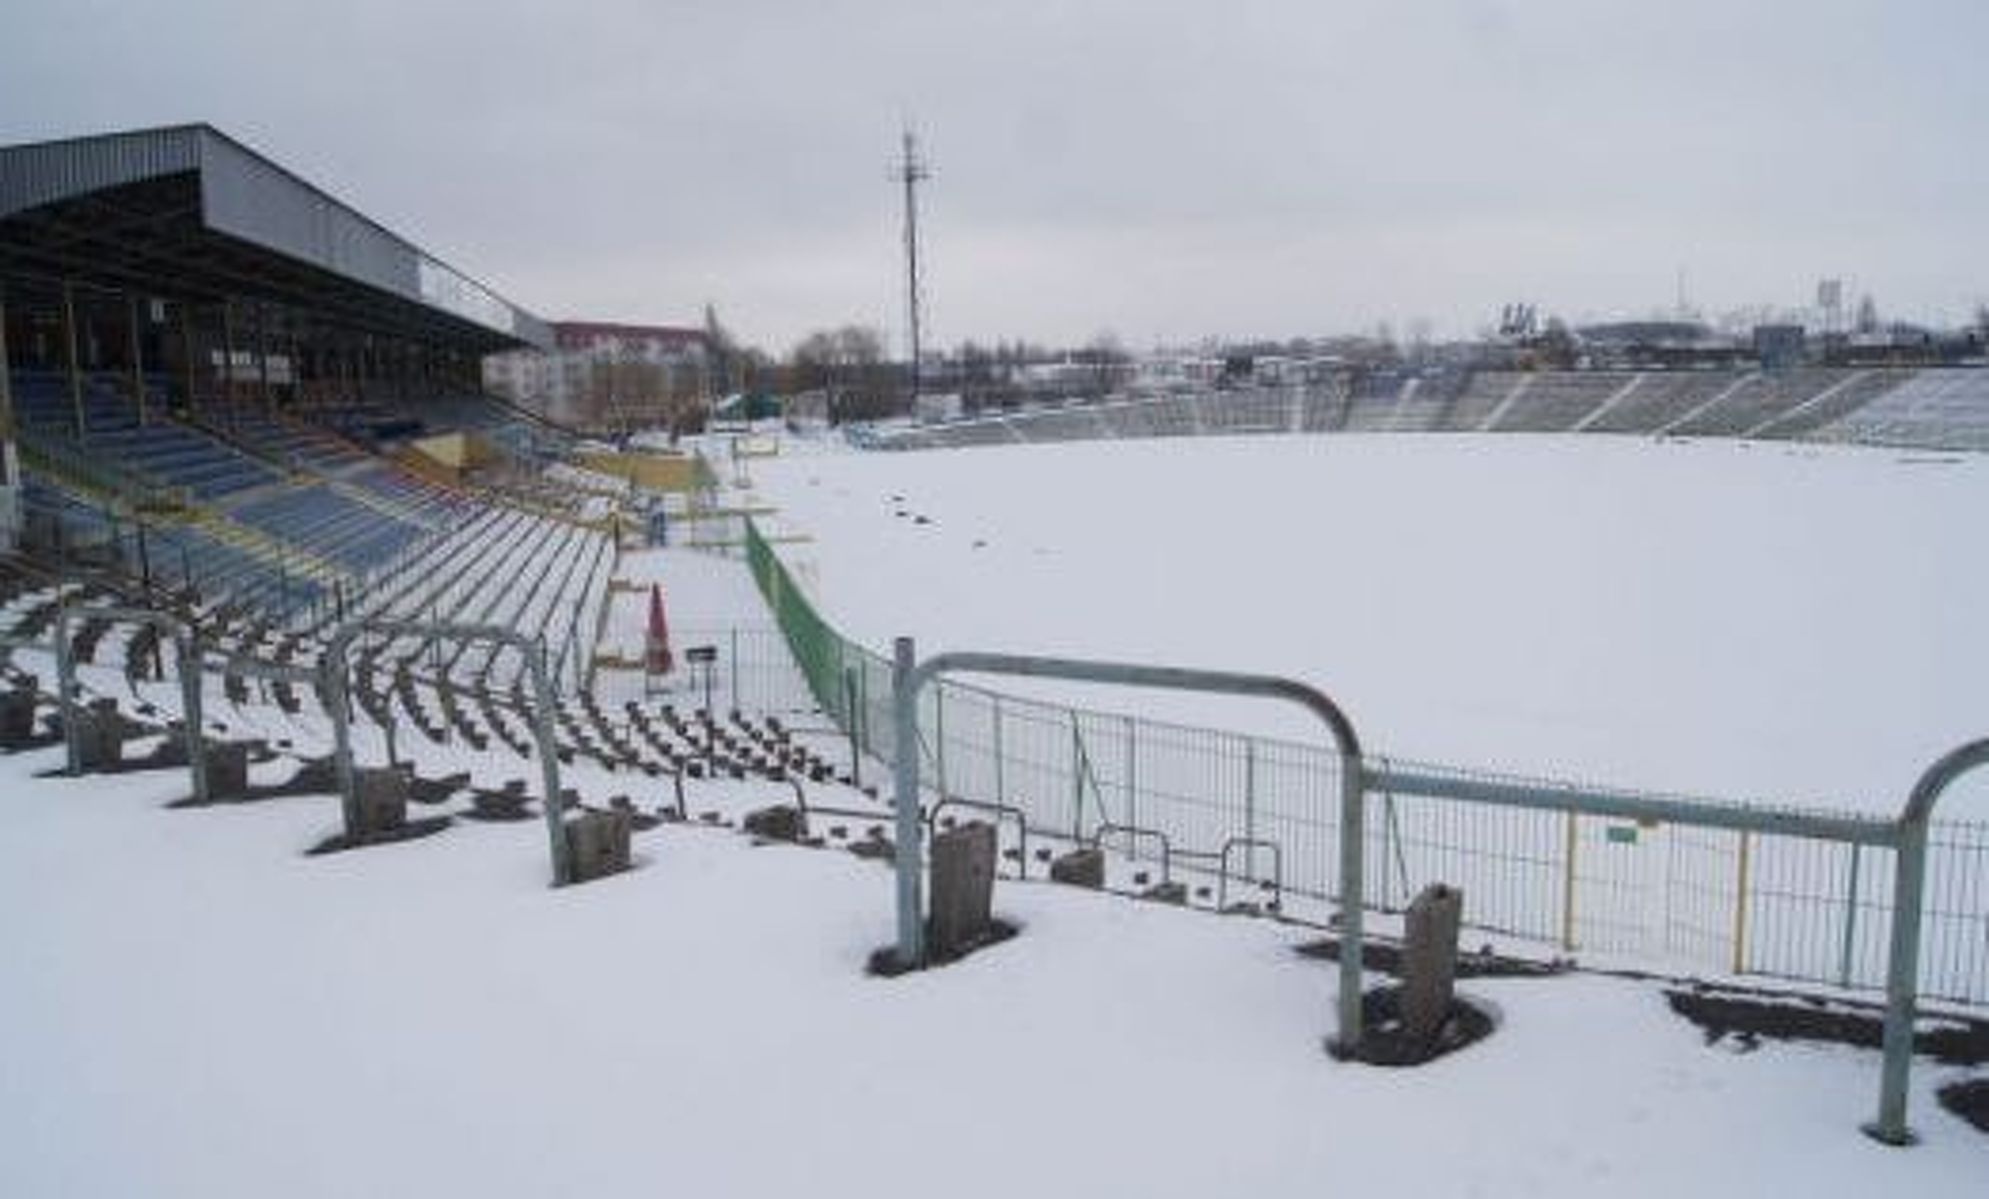 Stadion Stomilu w zimowej scenerii. Fot. Bartosz Cudnoch